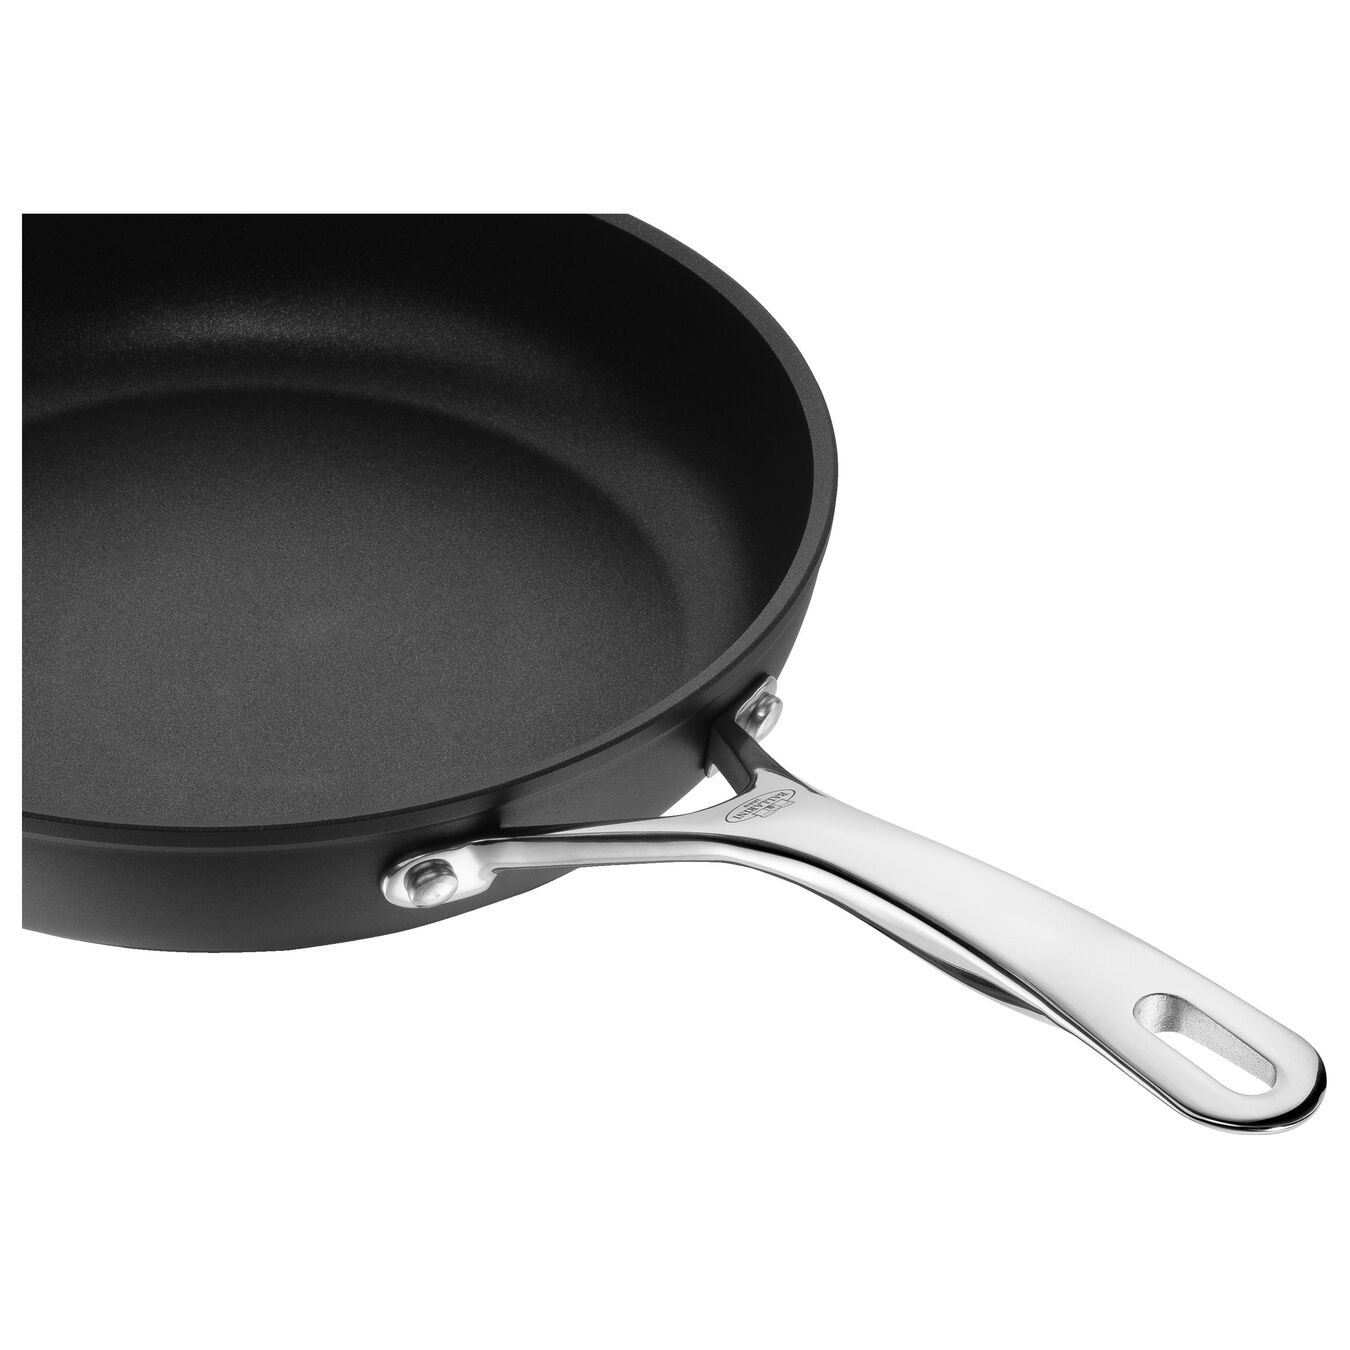 30 cm / 12 inch aluminium Frying pan,,large 4